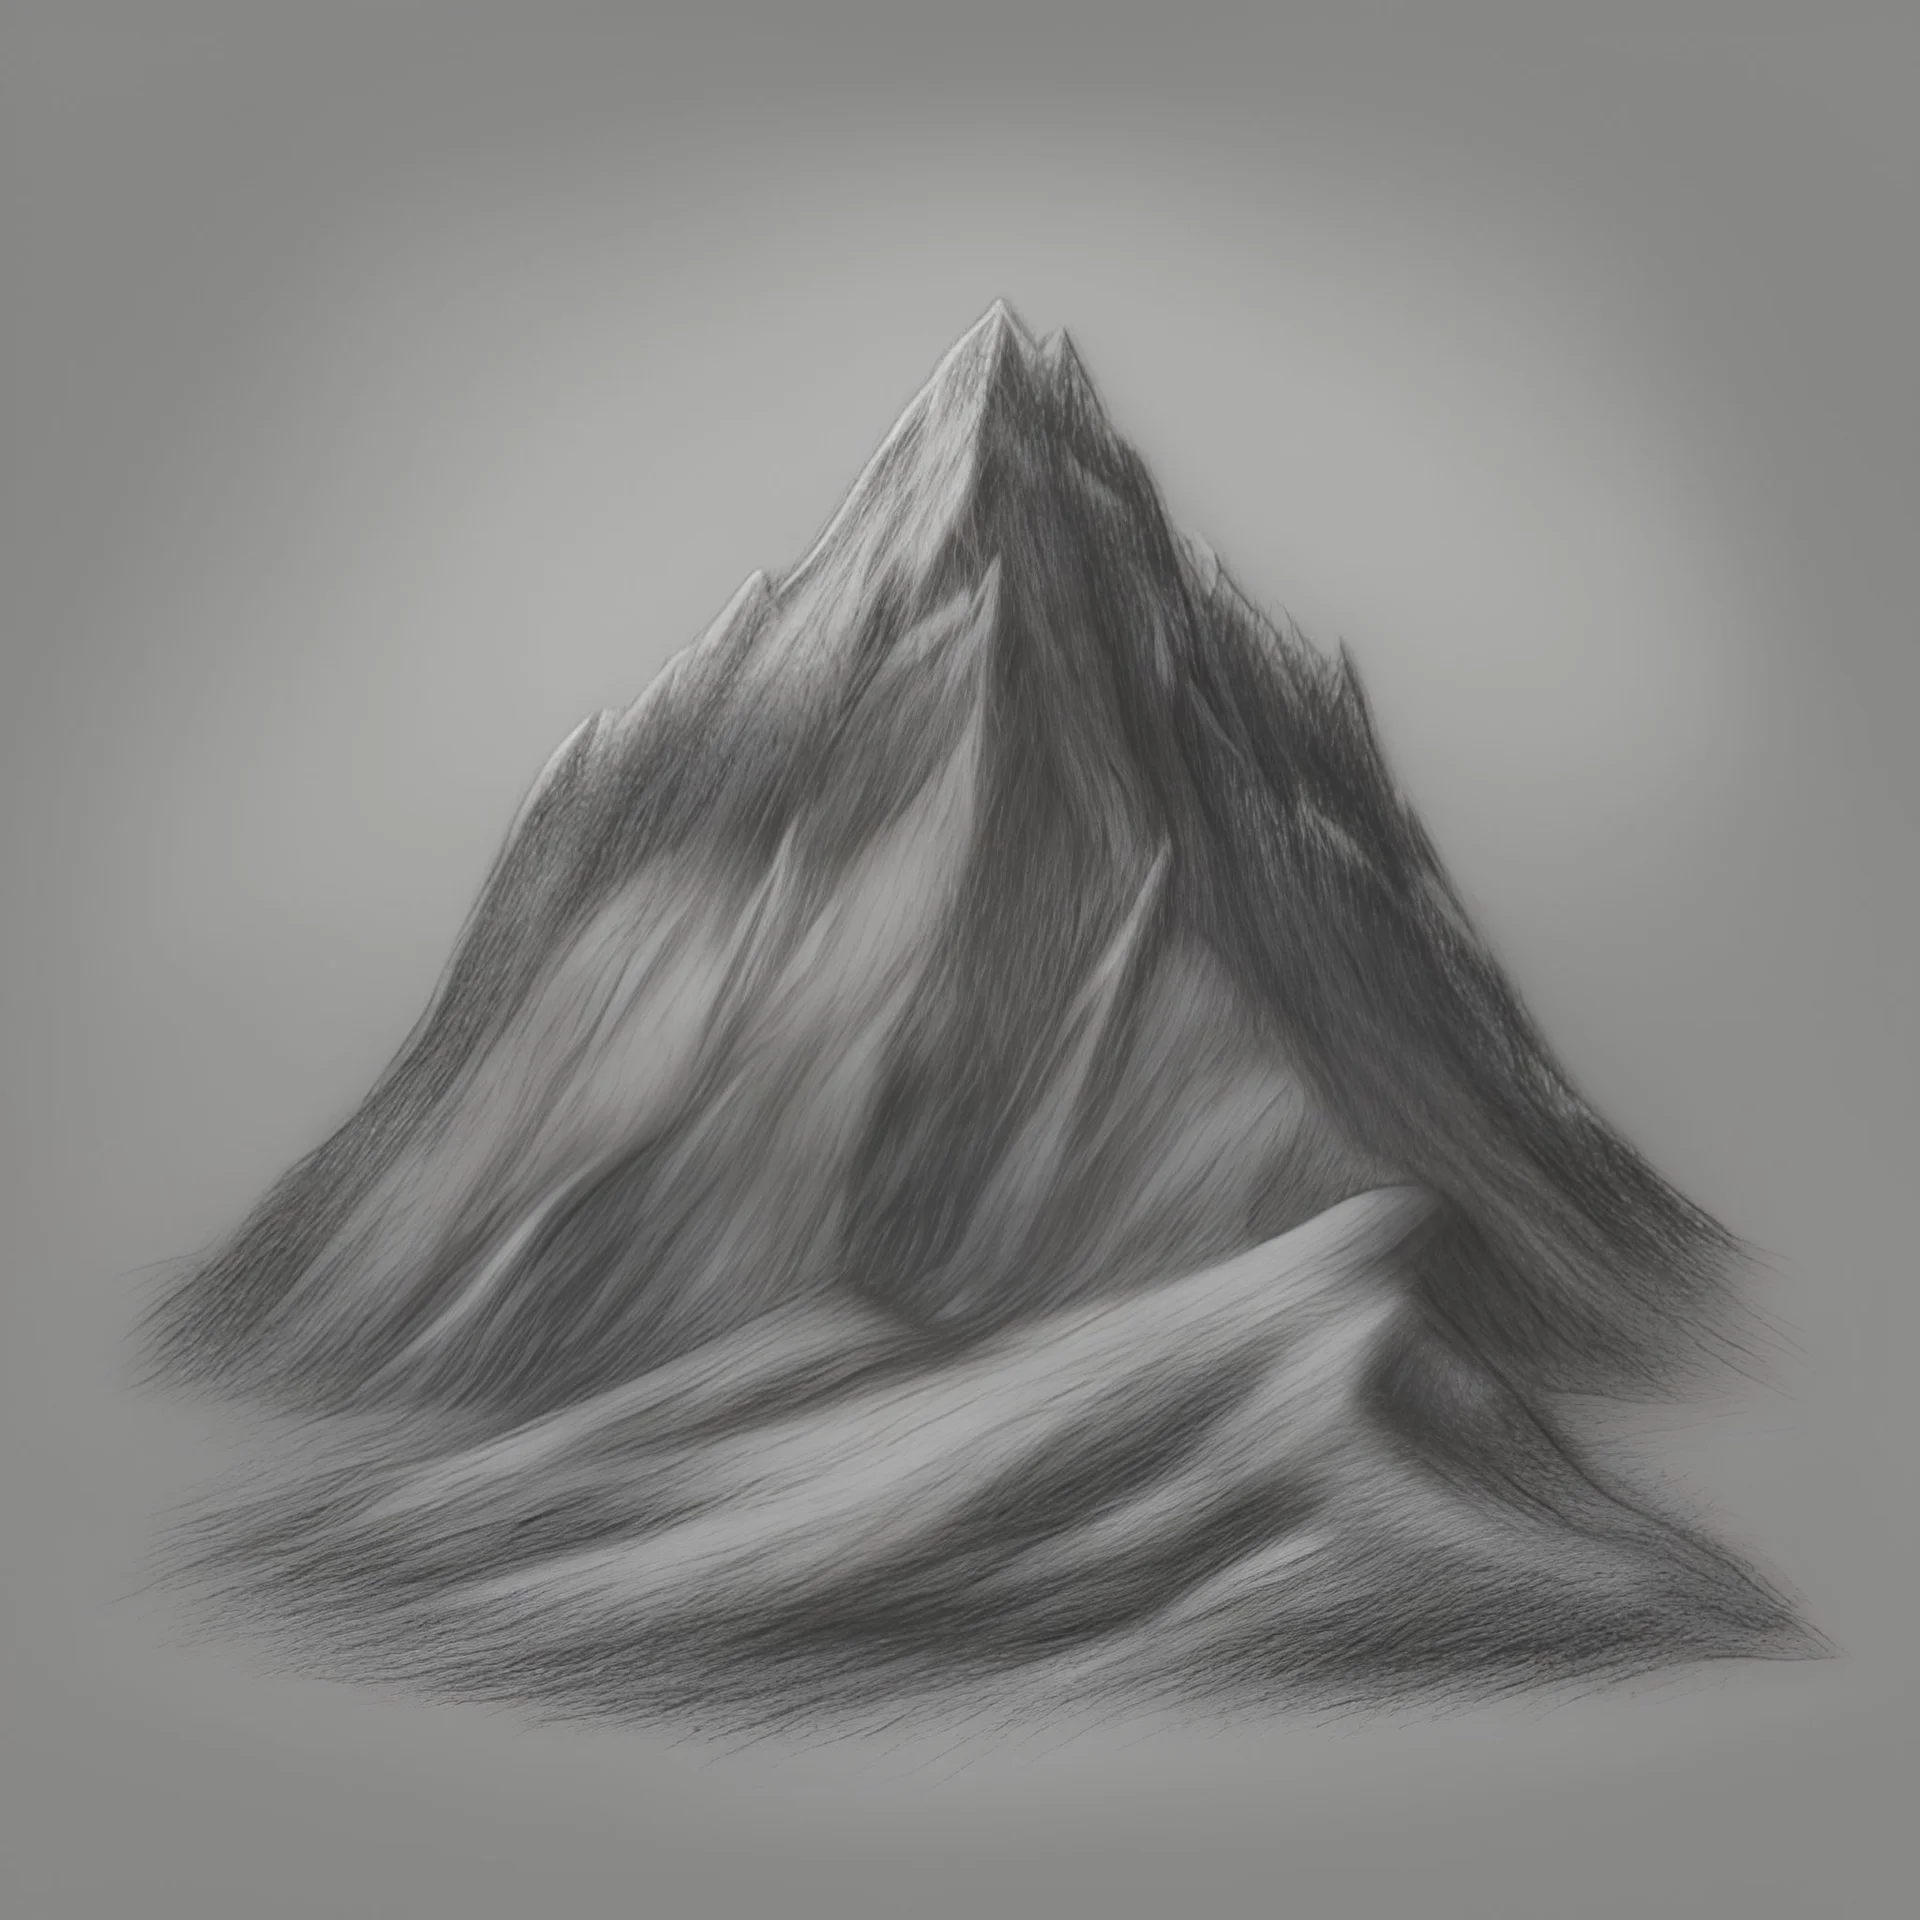 FREE 8+ Mountain Drawings in AI